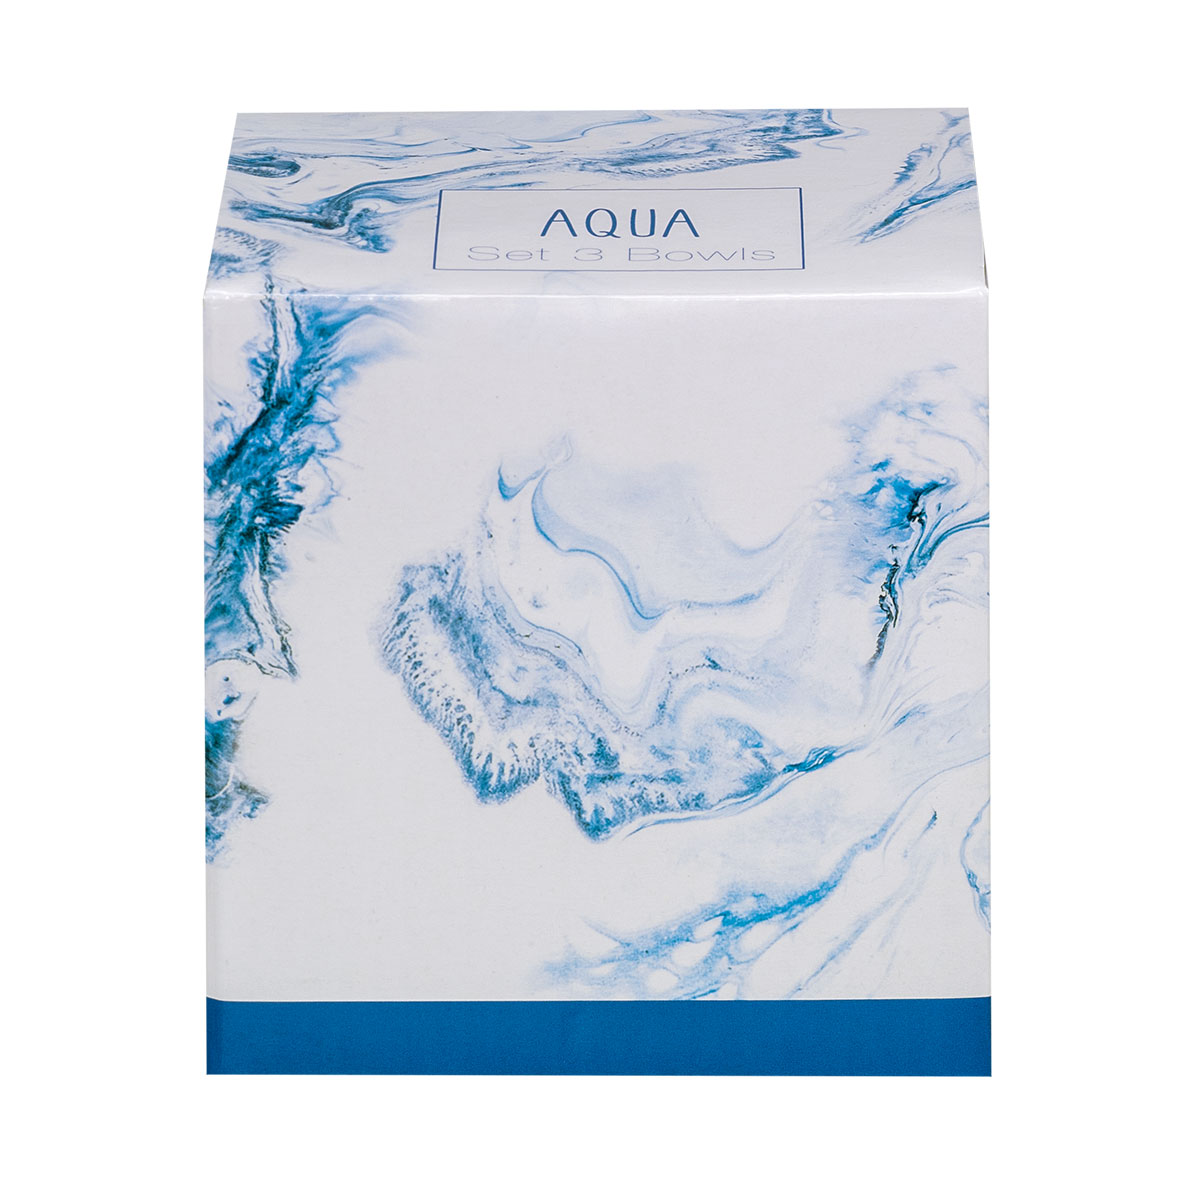 Aqua, 0.35l